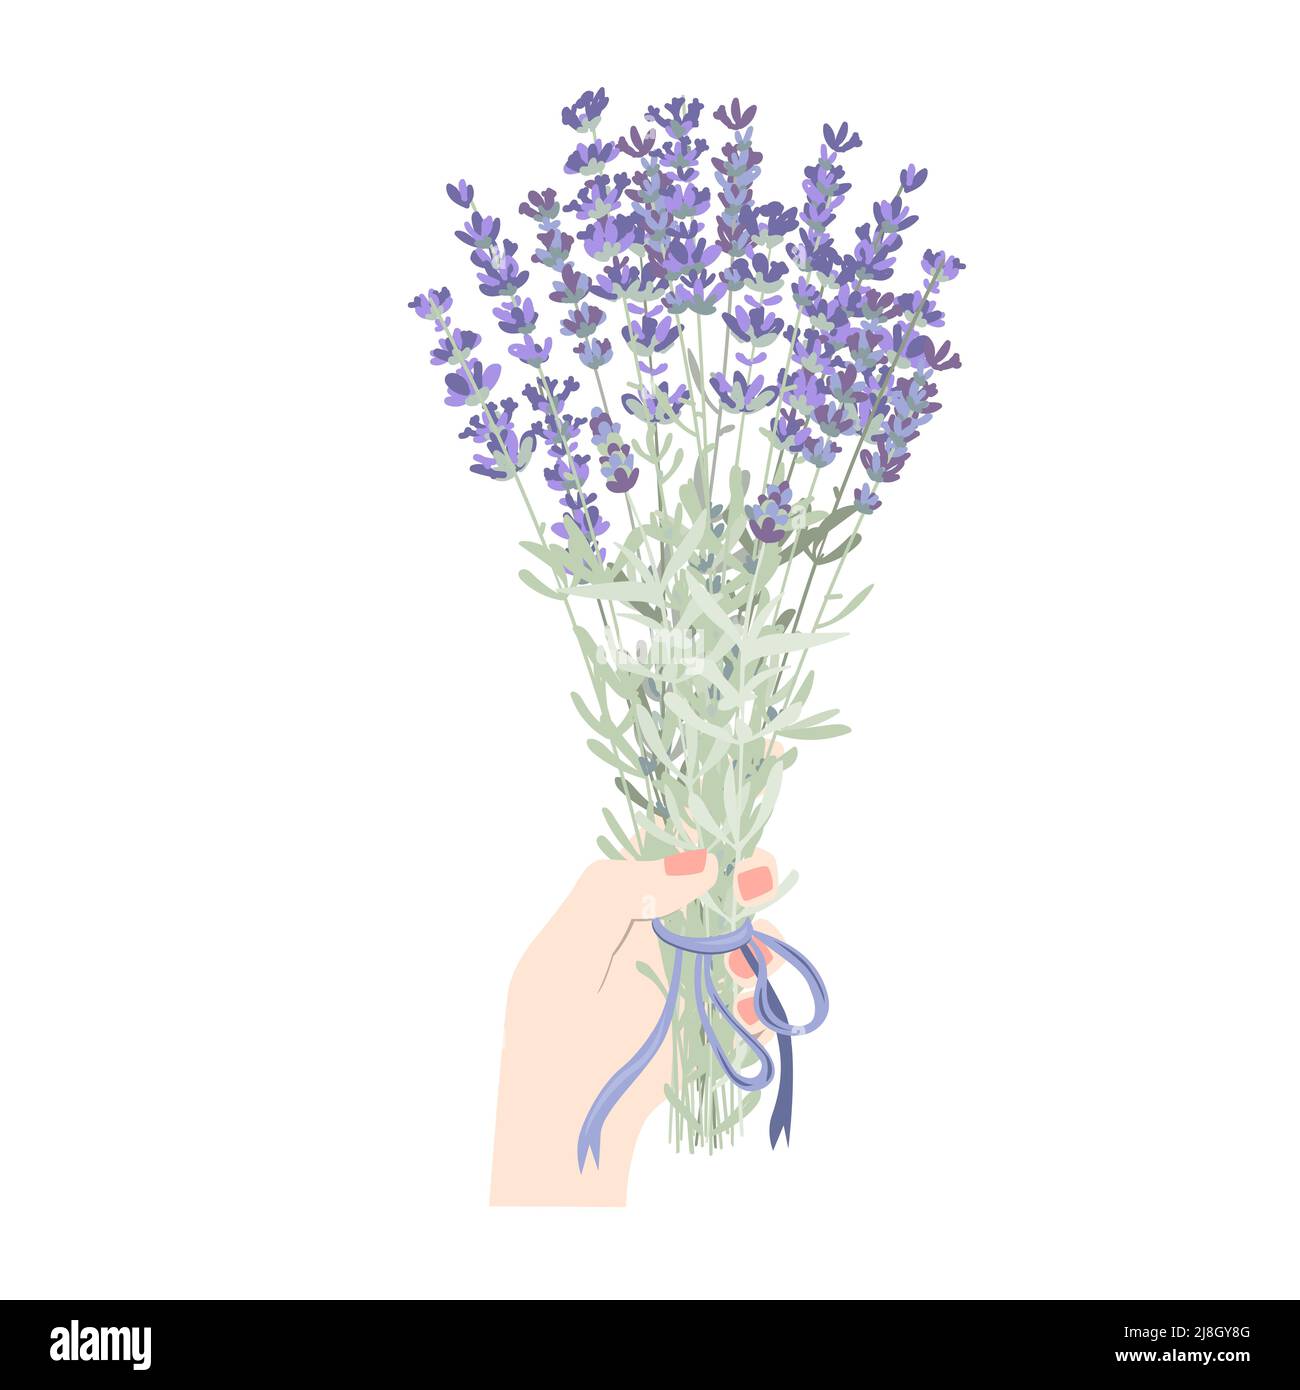 Donna mano che tiene fiore lavanda mazzo. Mano donna con fiori di lavandula isolati su sfondo bianco. Elemento floreale botanico piatto vettoriale Illustrazione Vettoriale